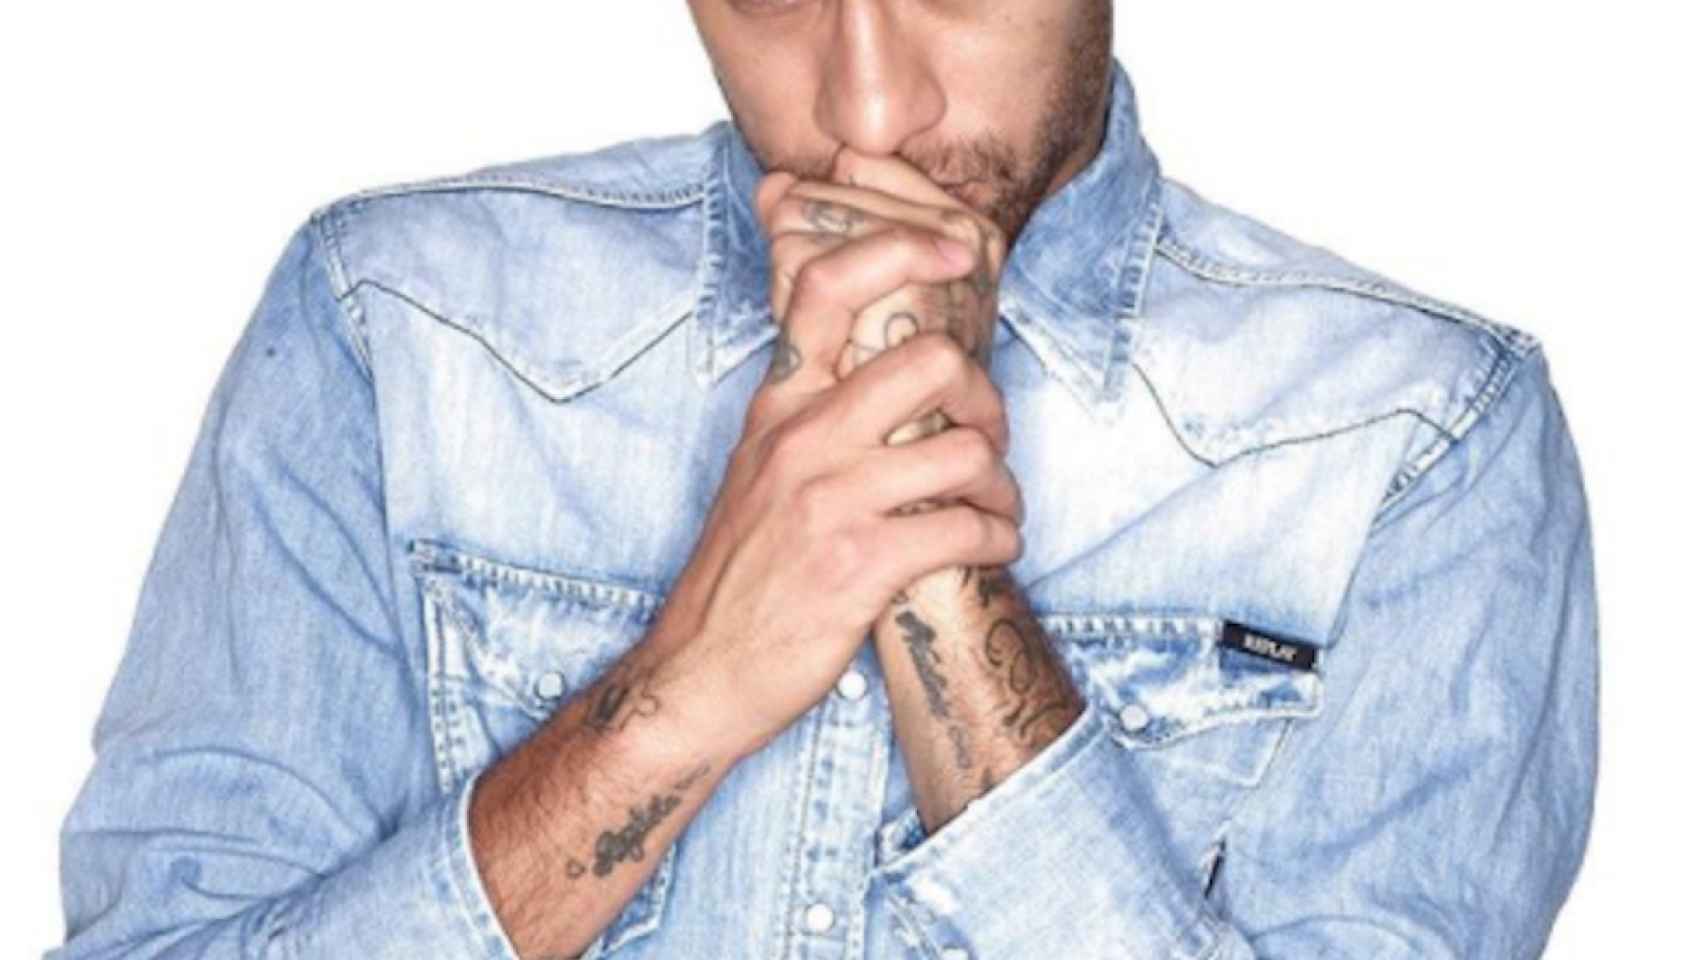 El futbolista Neymar Jr. en una foto de archivo / Instagram